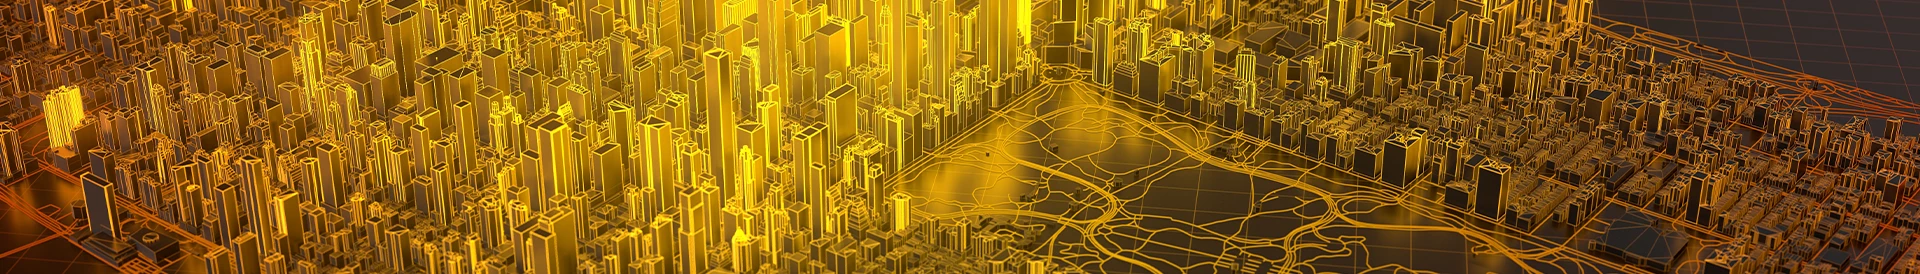 żółty rozkład miasta z góry